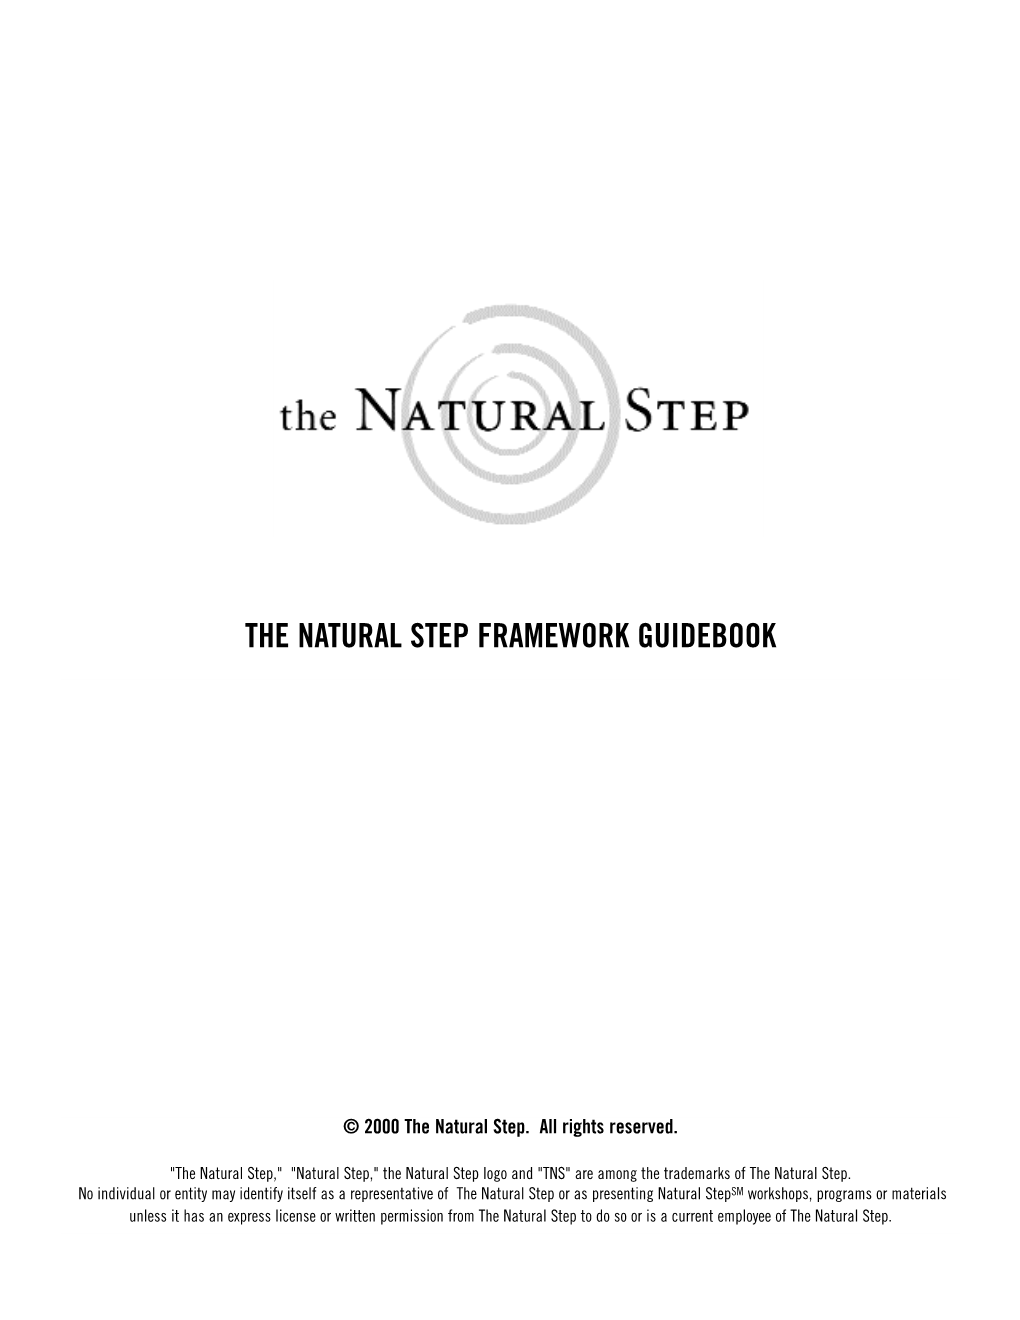 The Natural Step Framework Guidebook